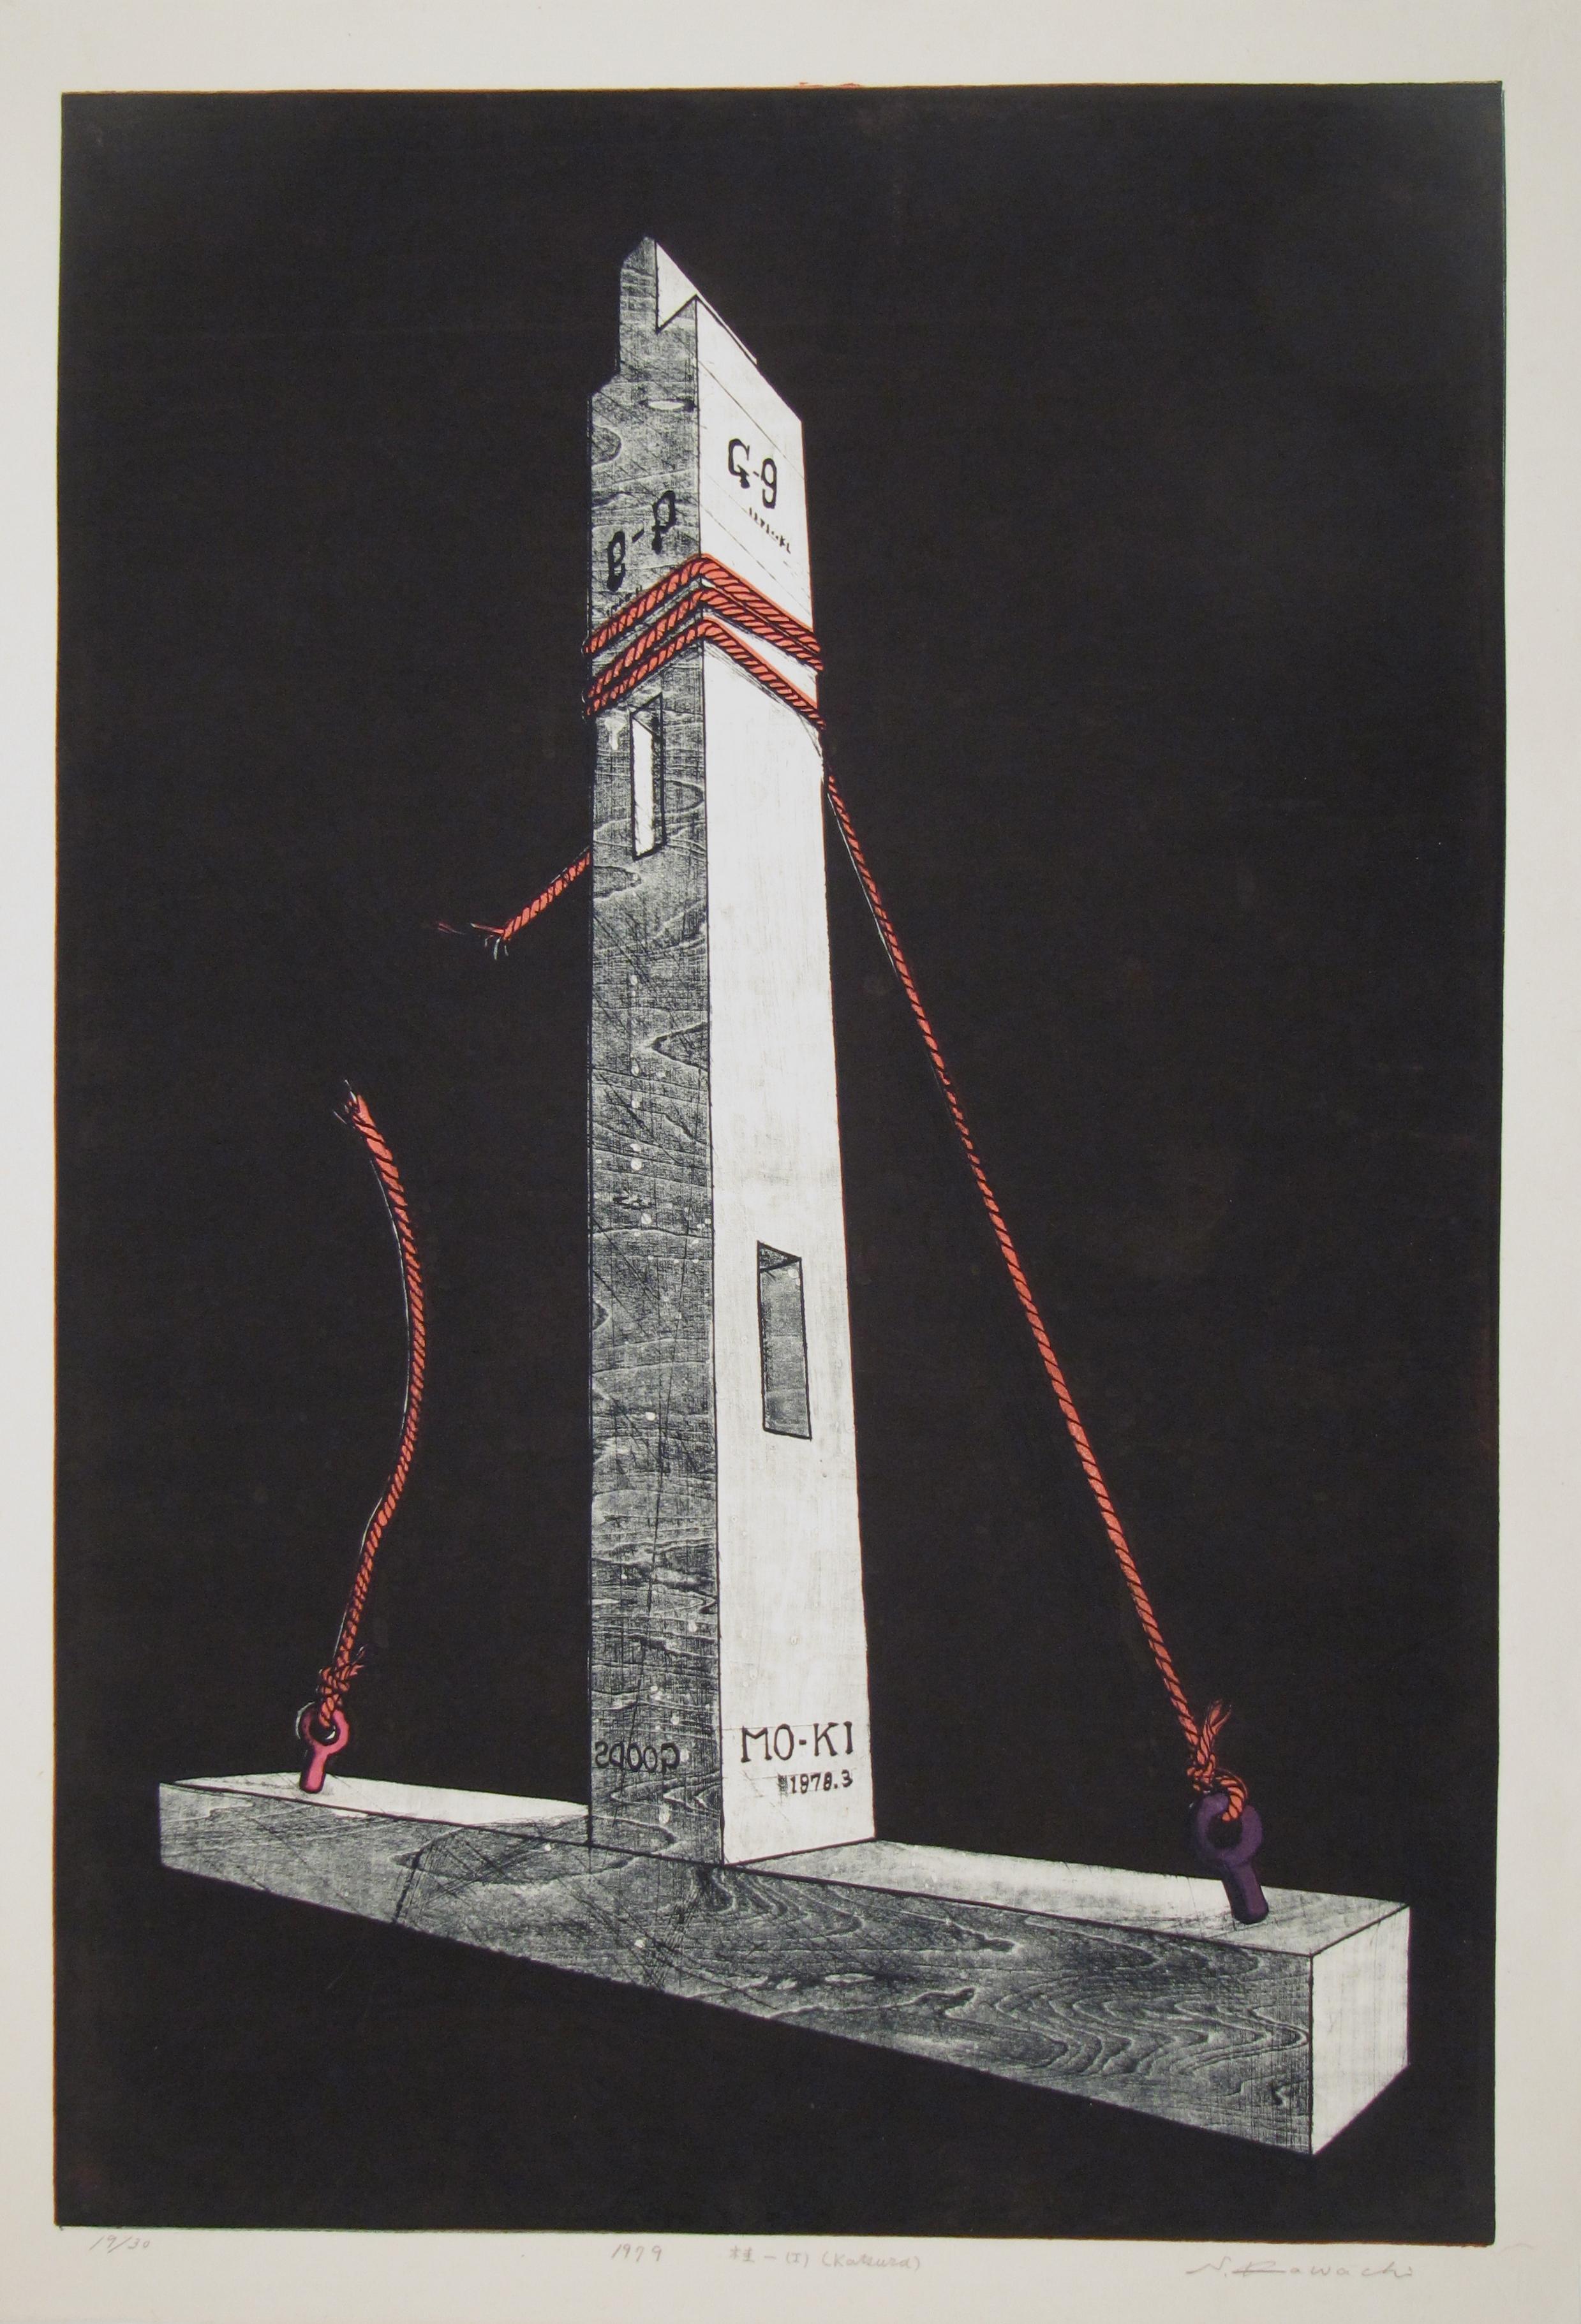 Seiko Kawachi
(japonais, 1948)

KATSURA
(Le Pilier)

•	Gravure sur bois, environ 98 x 69 cm
•	Signé, daté 1979
•	Limitée 19/30

L'expédition de cet objet dans le monde entier est gratuite. Il n'y a pas de frais supplémentaires pour la manutention et